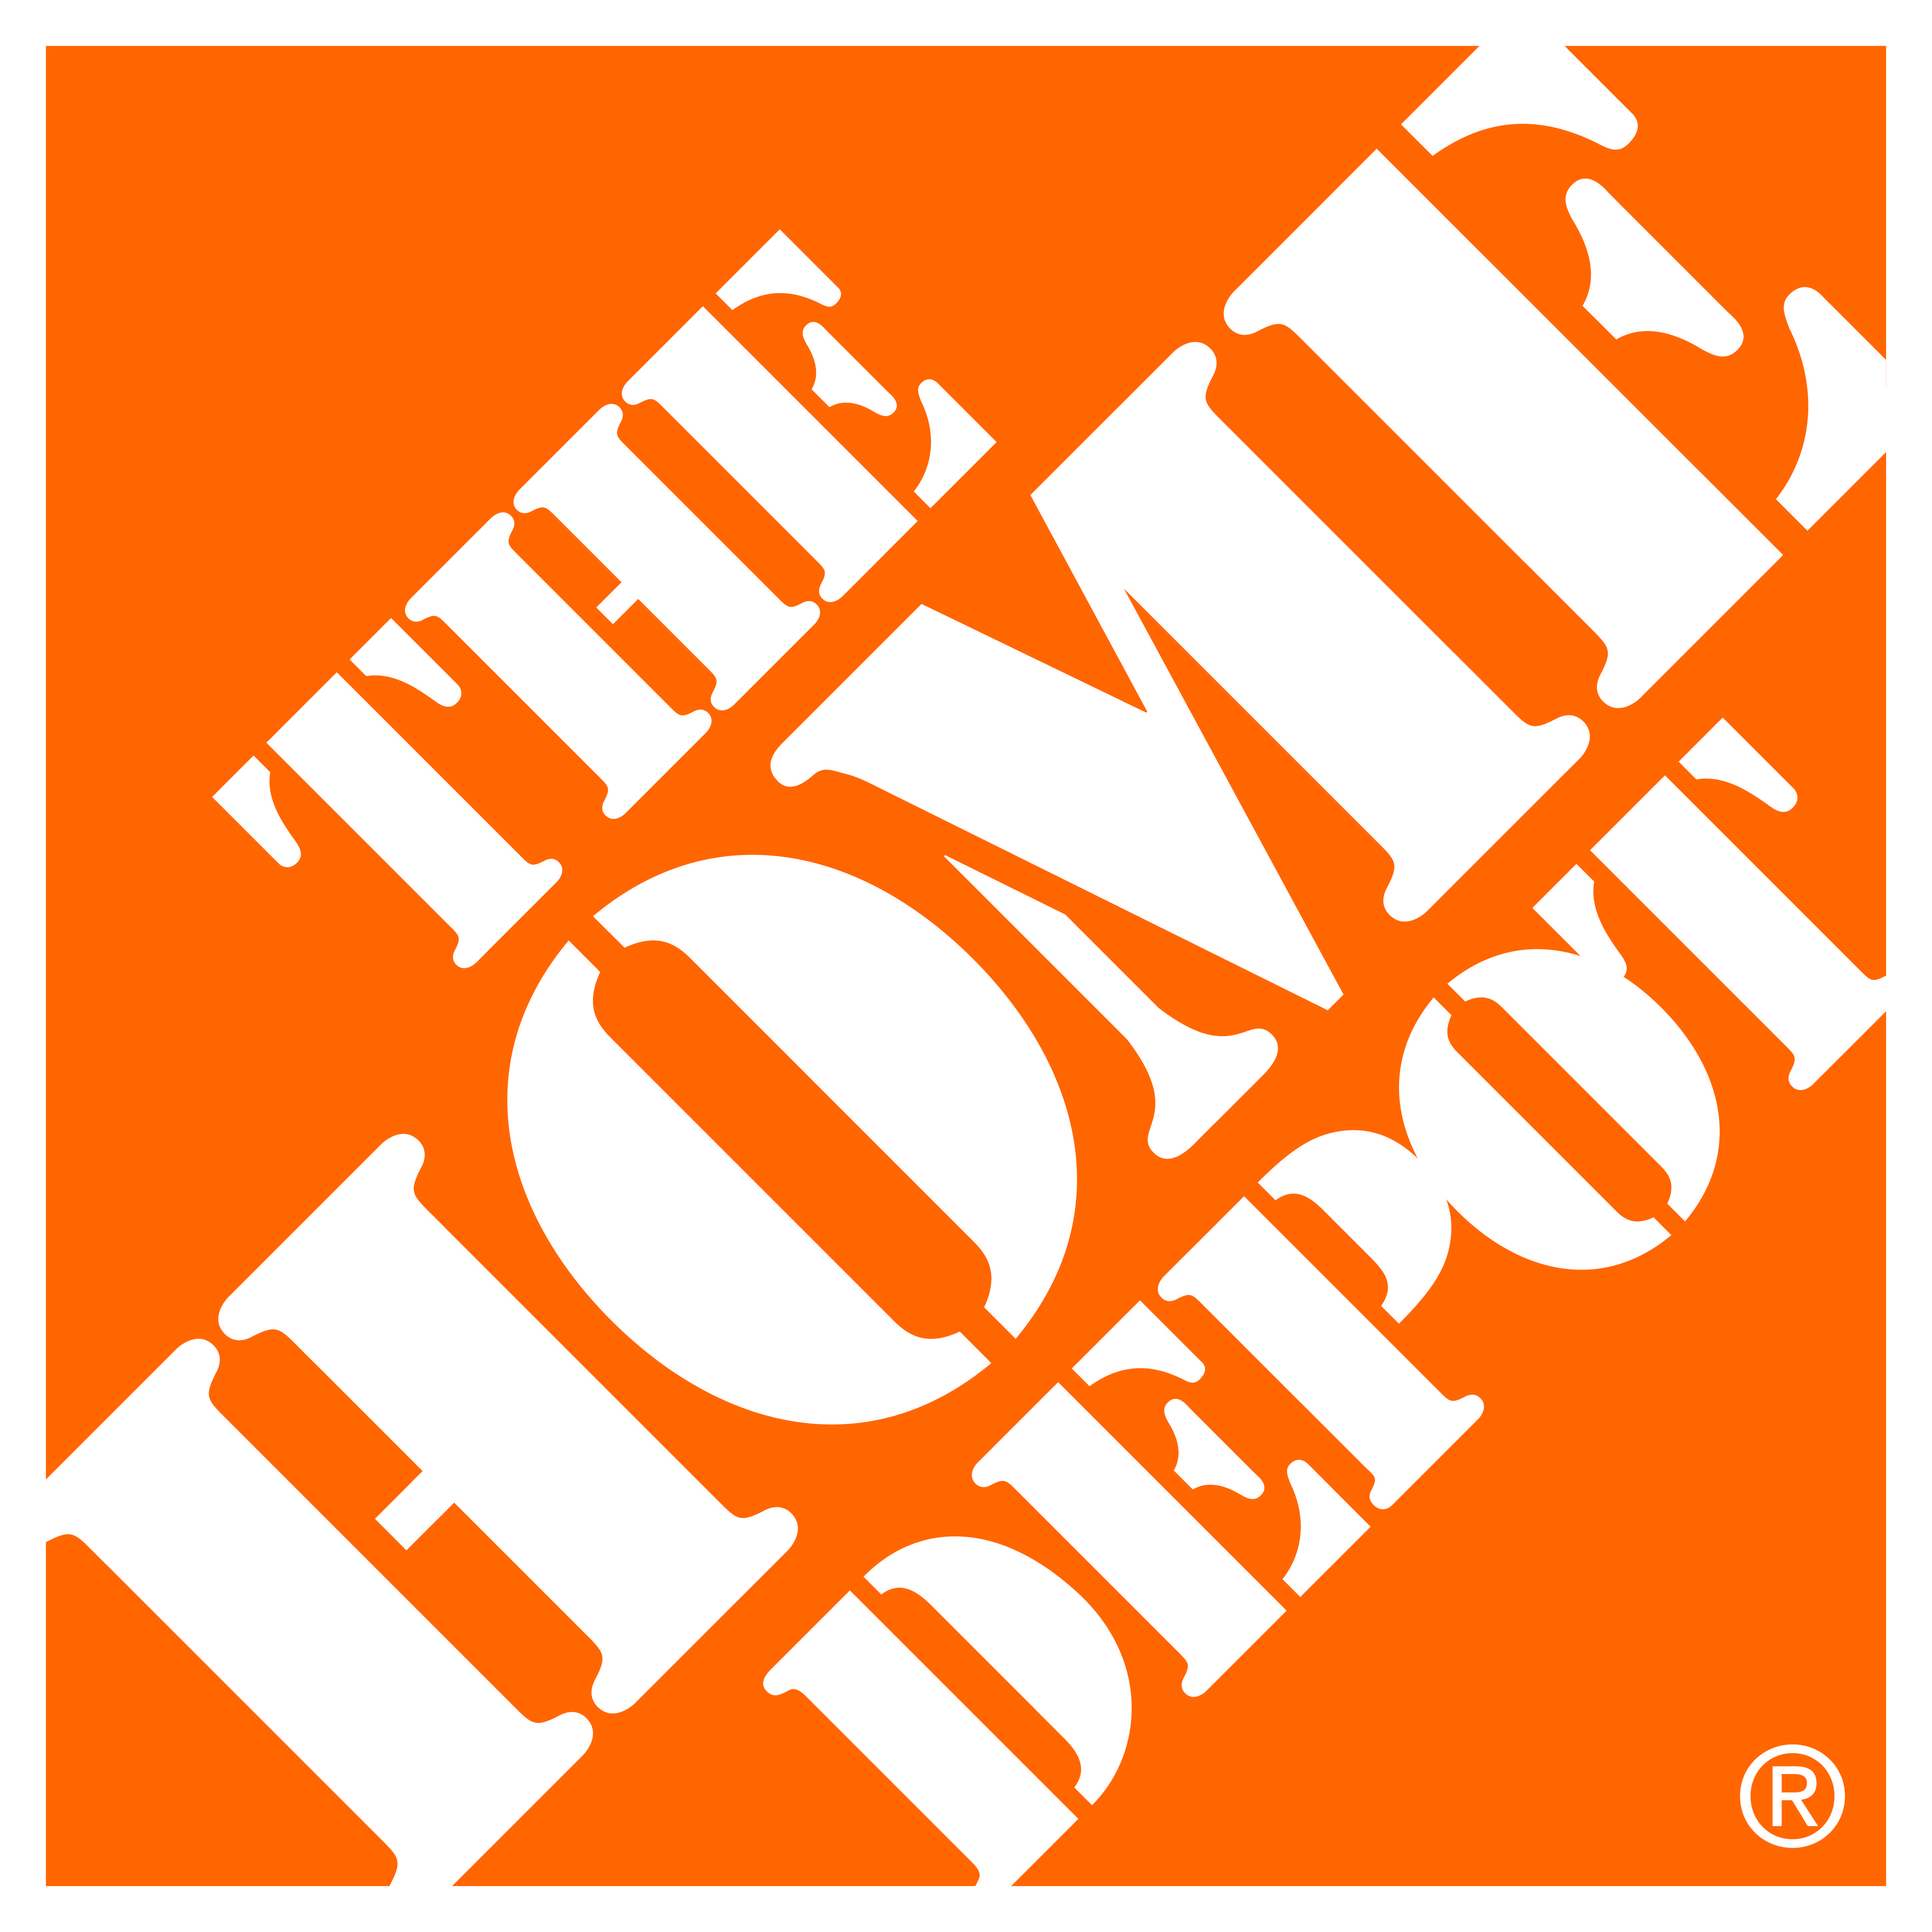 Home Depot Logo - The Home Depot. The Home Depot